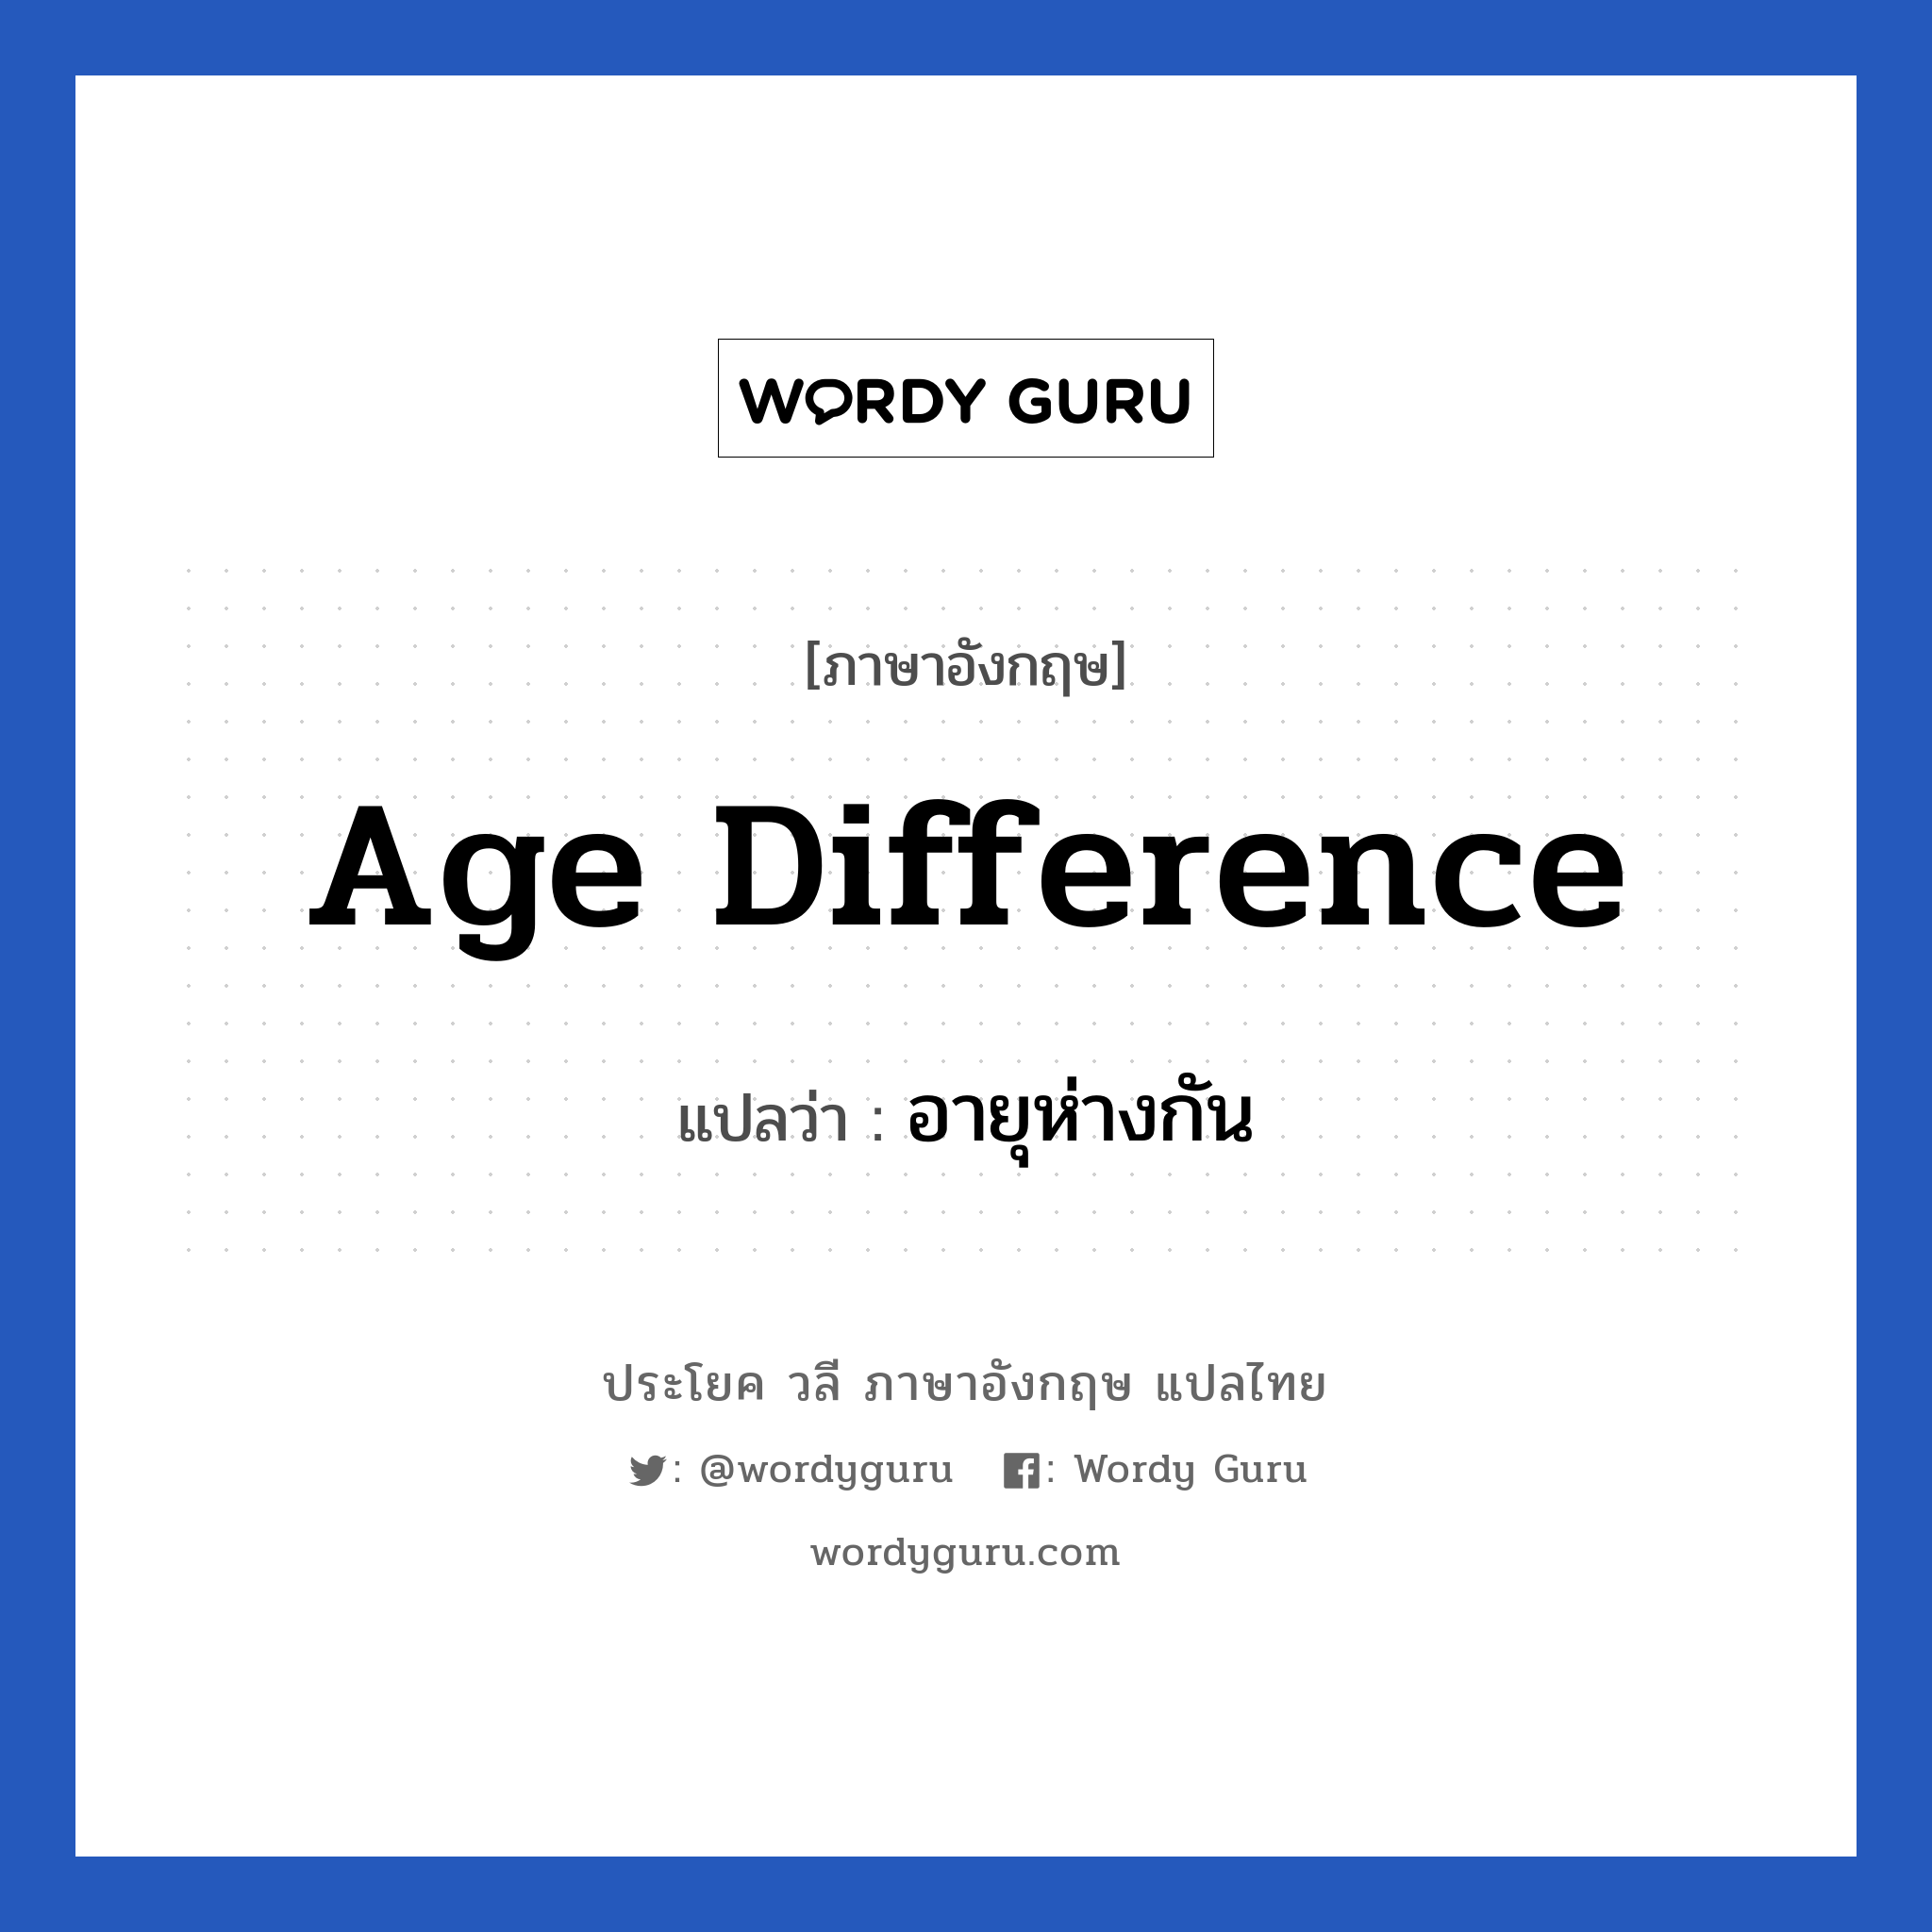 อายุห่างกัน ภาษาอังกฤษ?, วลีภาษาอังกฤษ อายุห่างกัน แปลว่า age difference